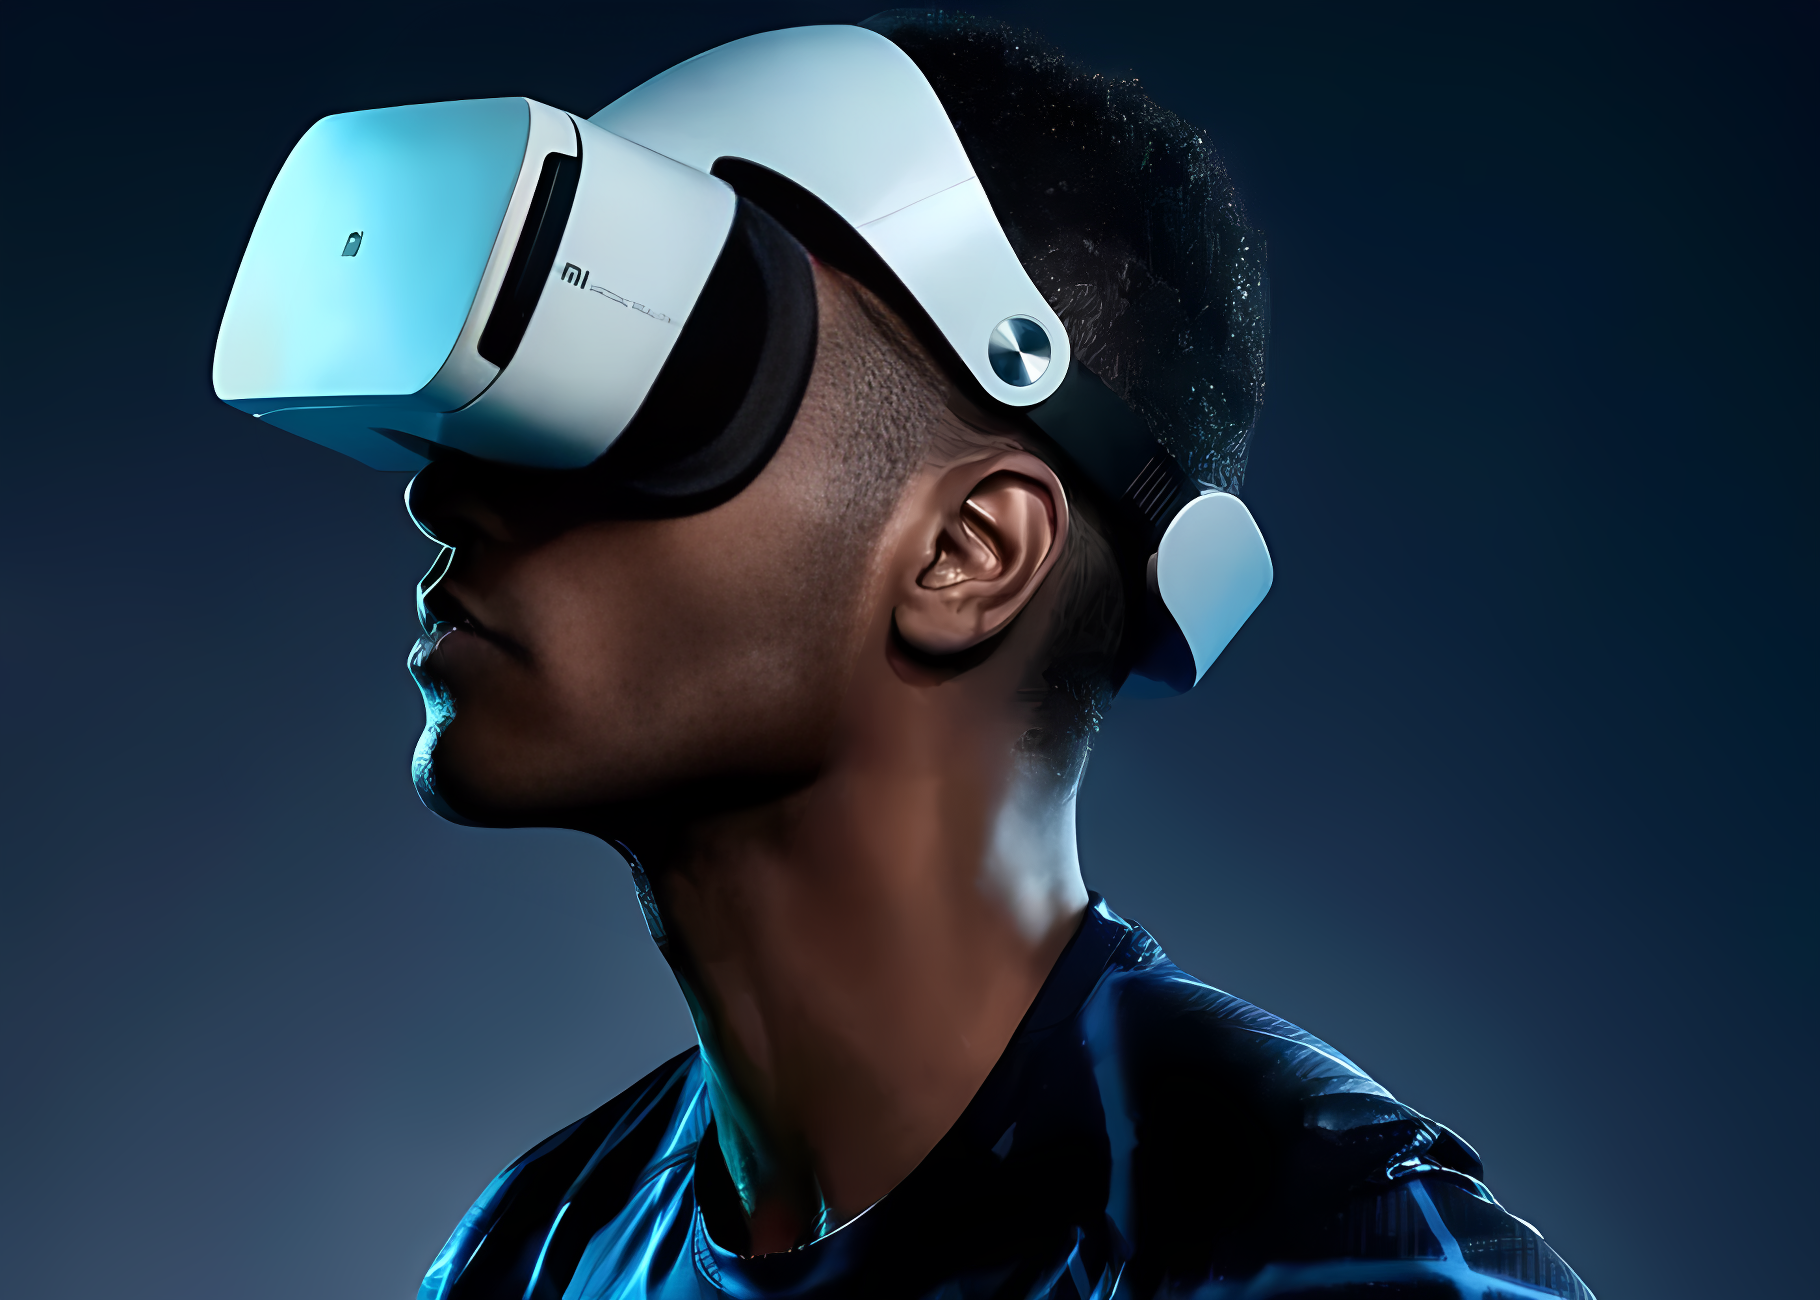 一位男士佩戴着虚拟现实头盔，专注地向右侧看去，背景为深色调，整体氛围科技感十足。